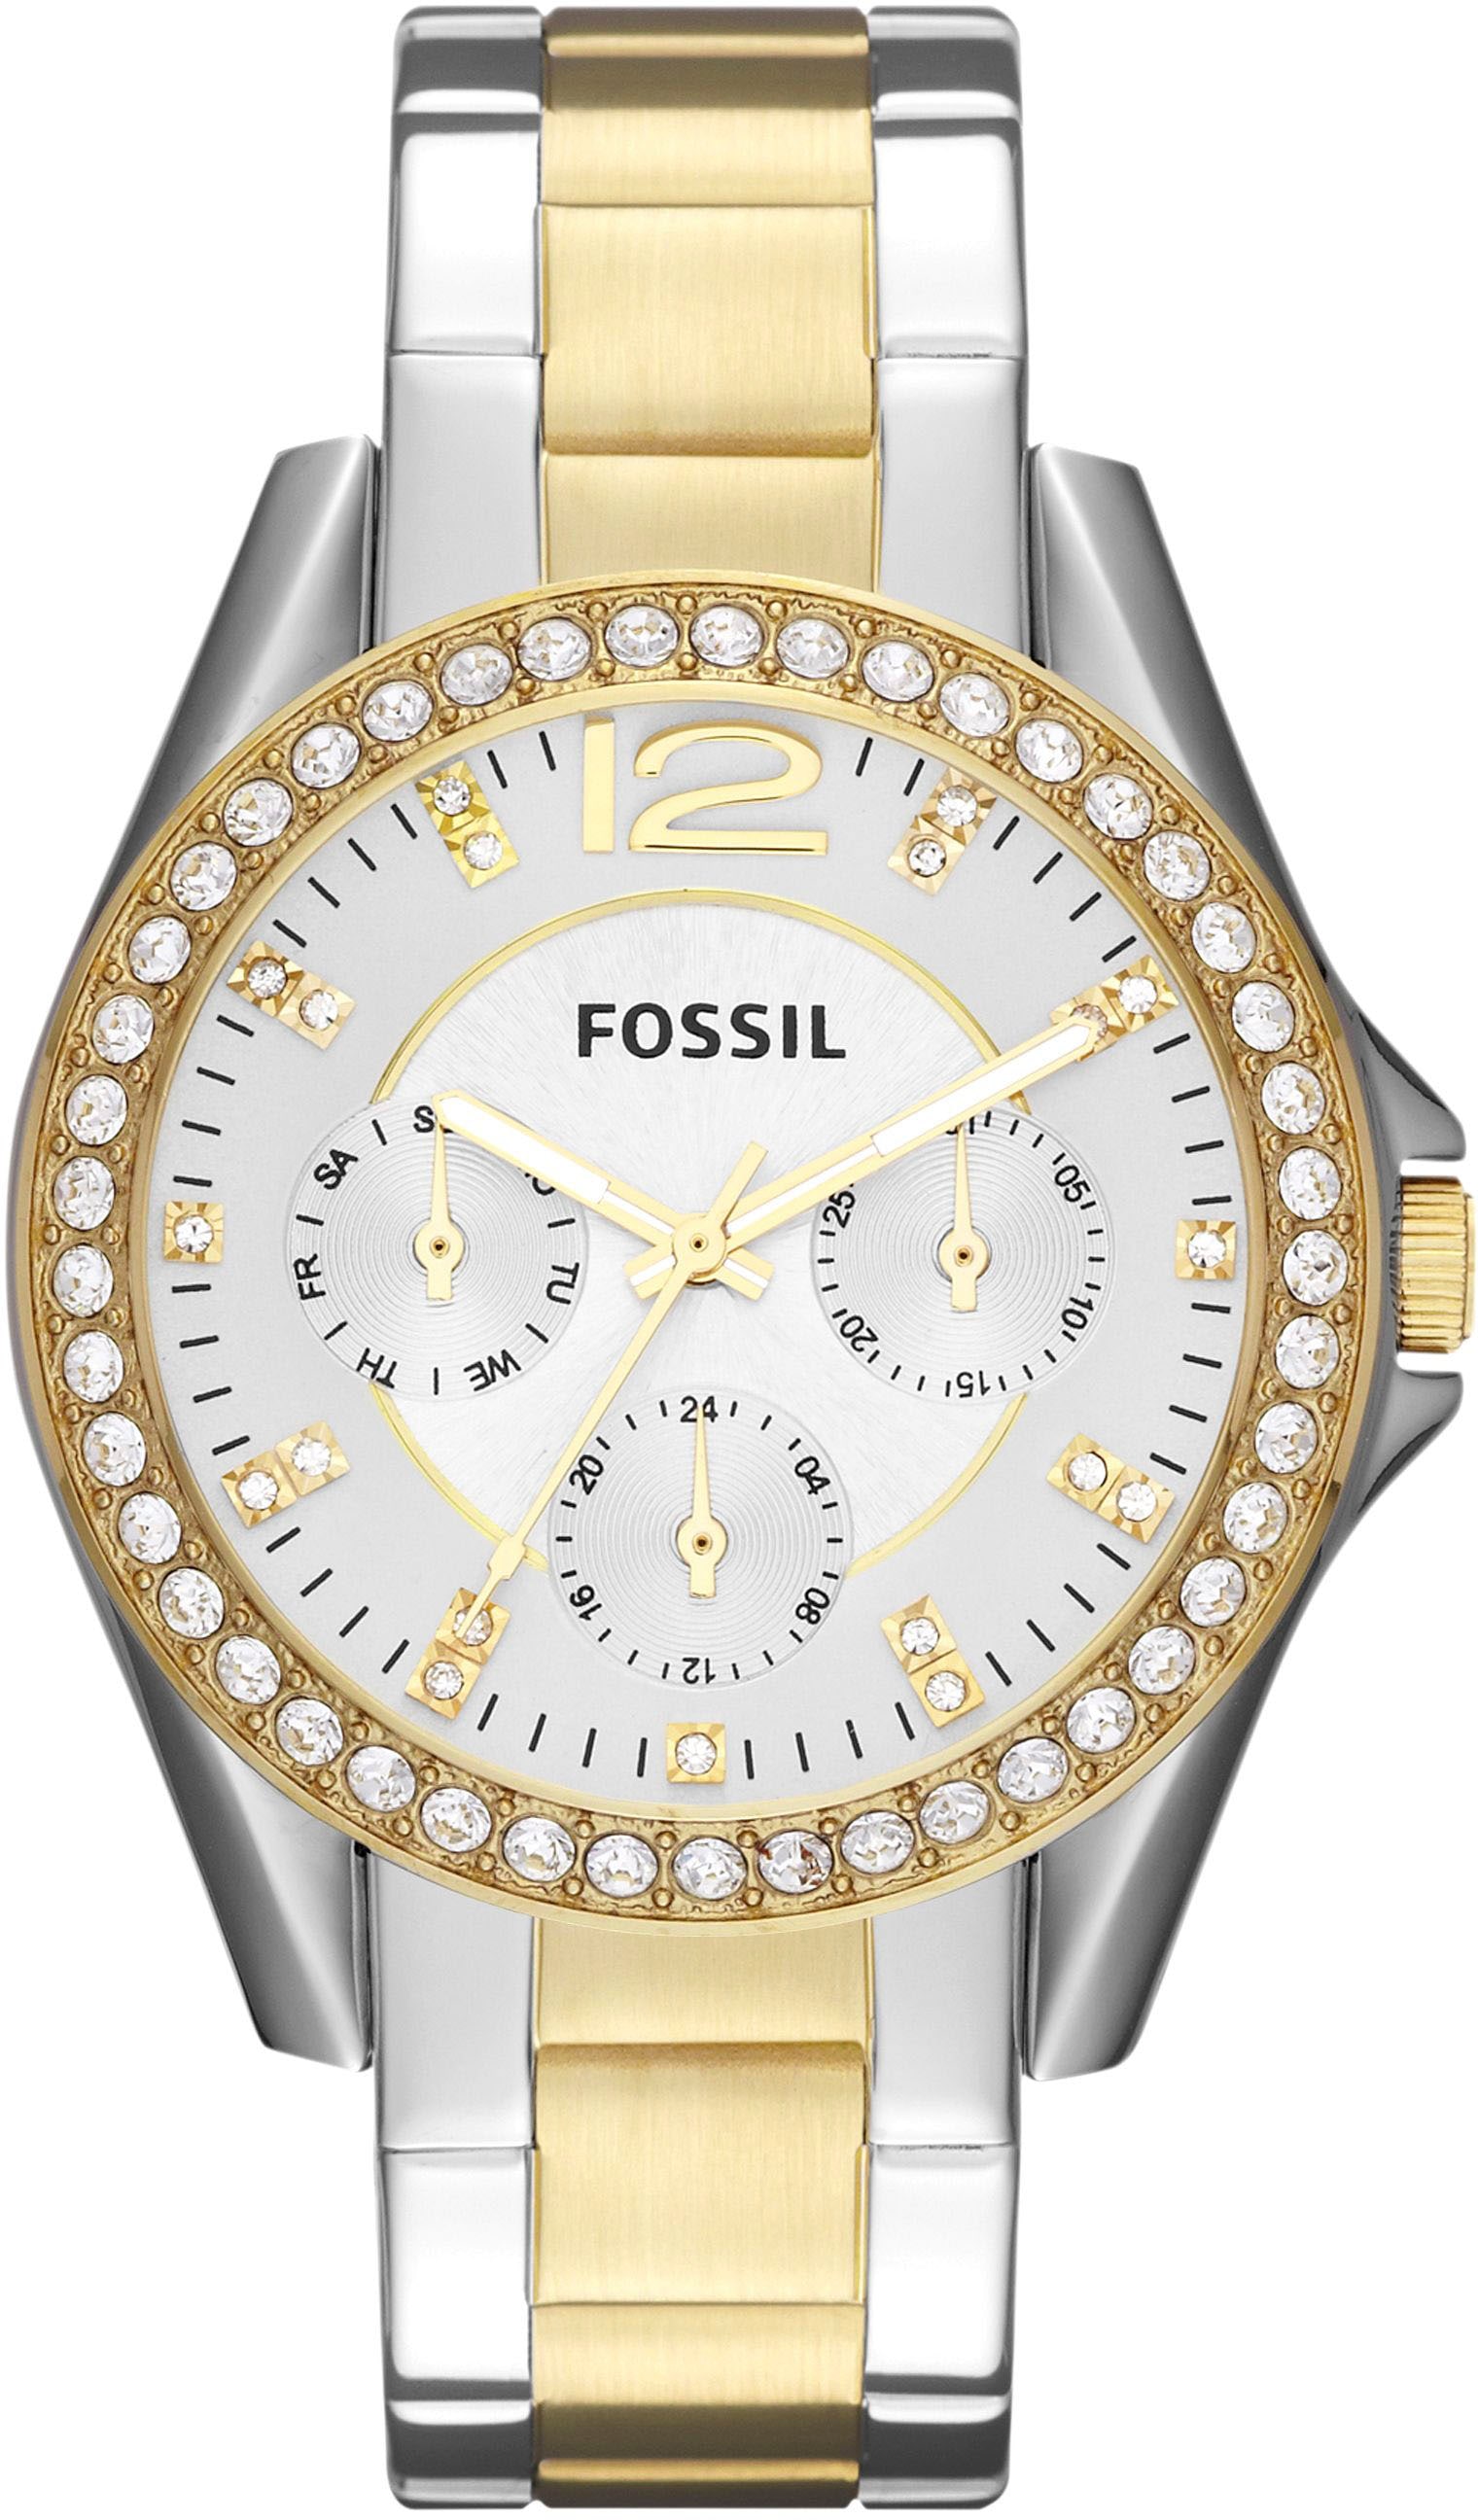 Uhren günstig kaufen Fossil online